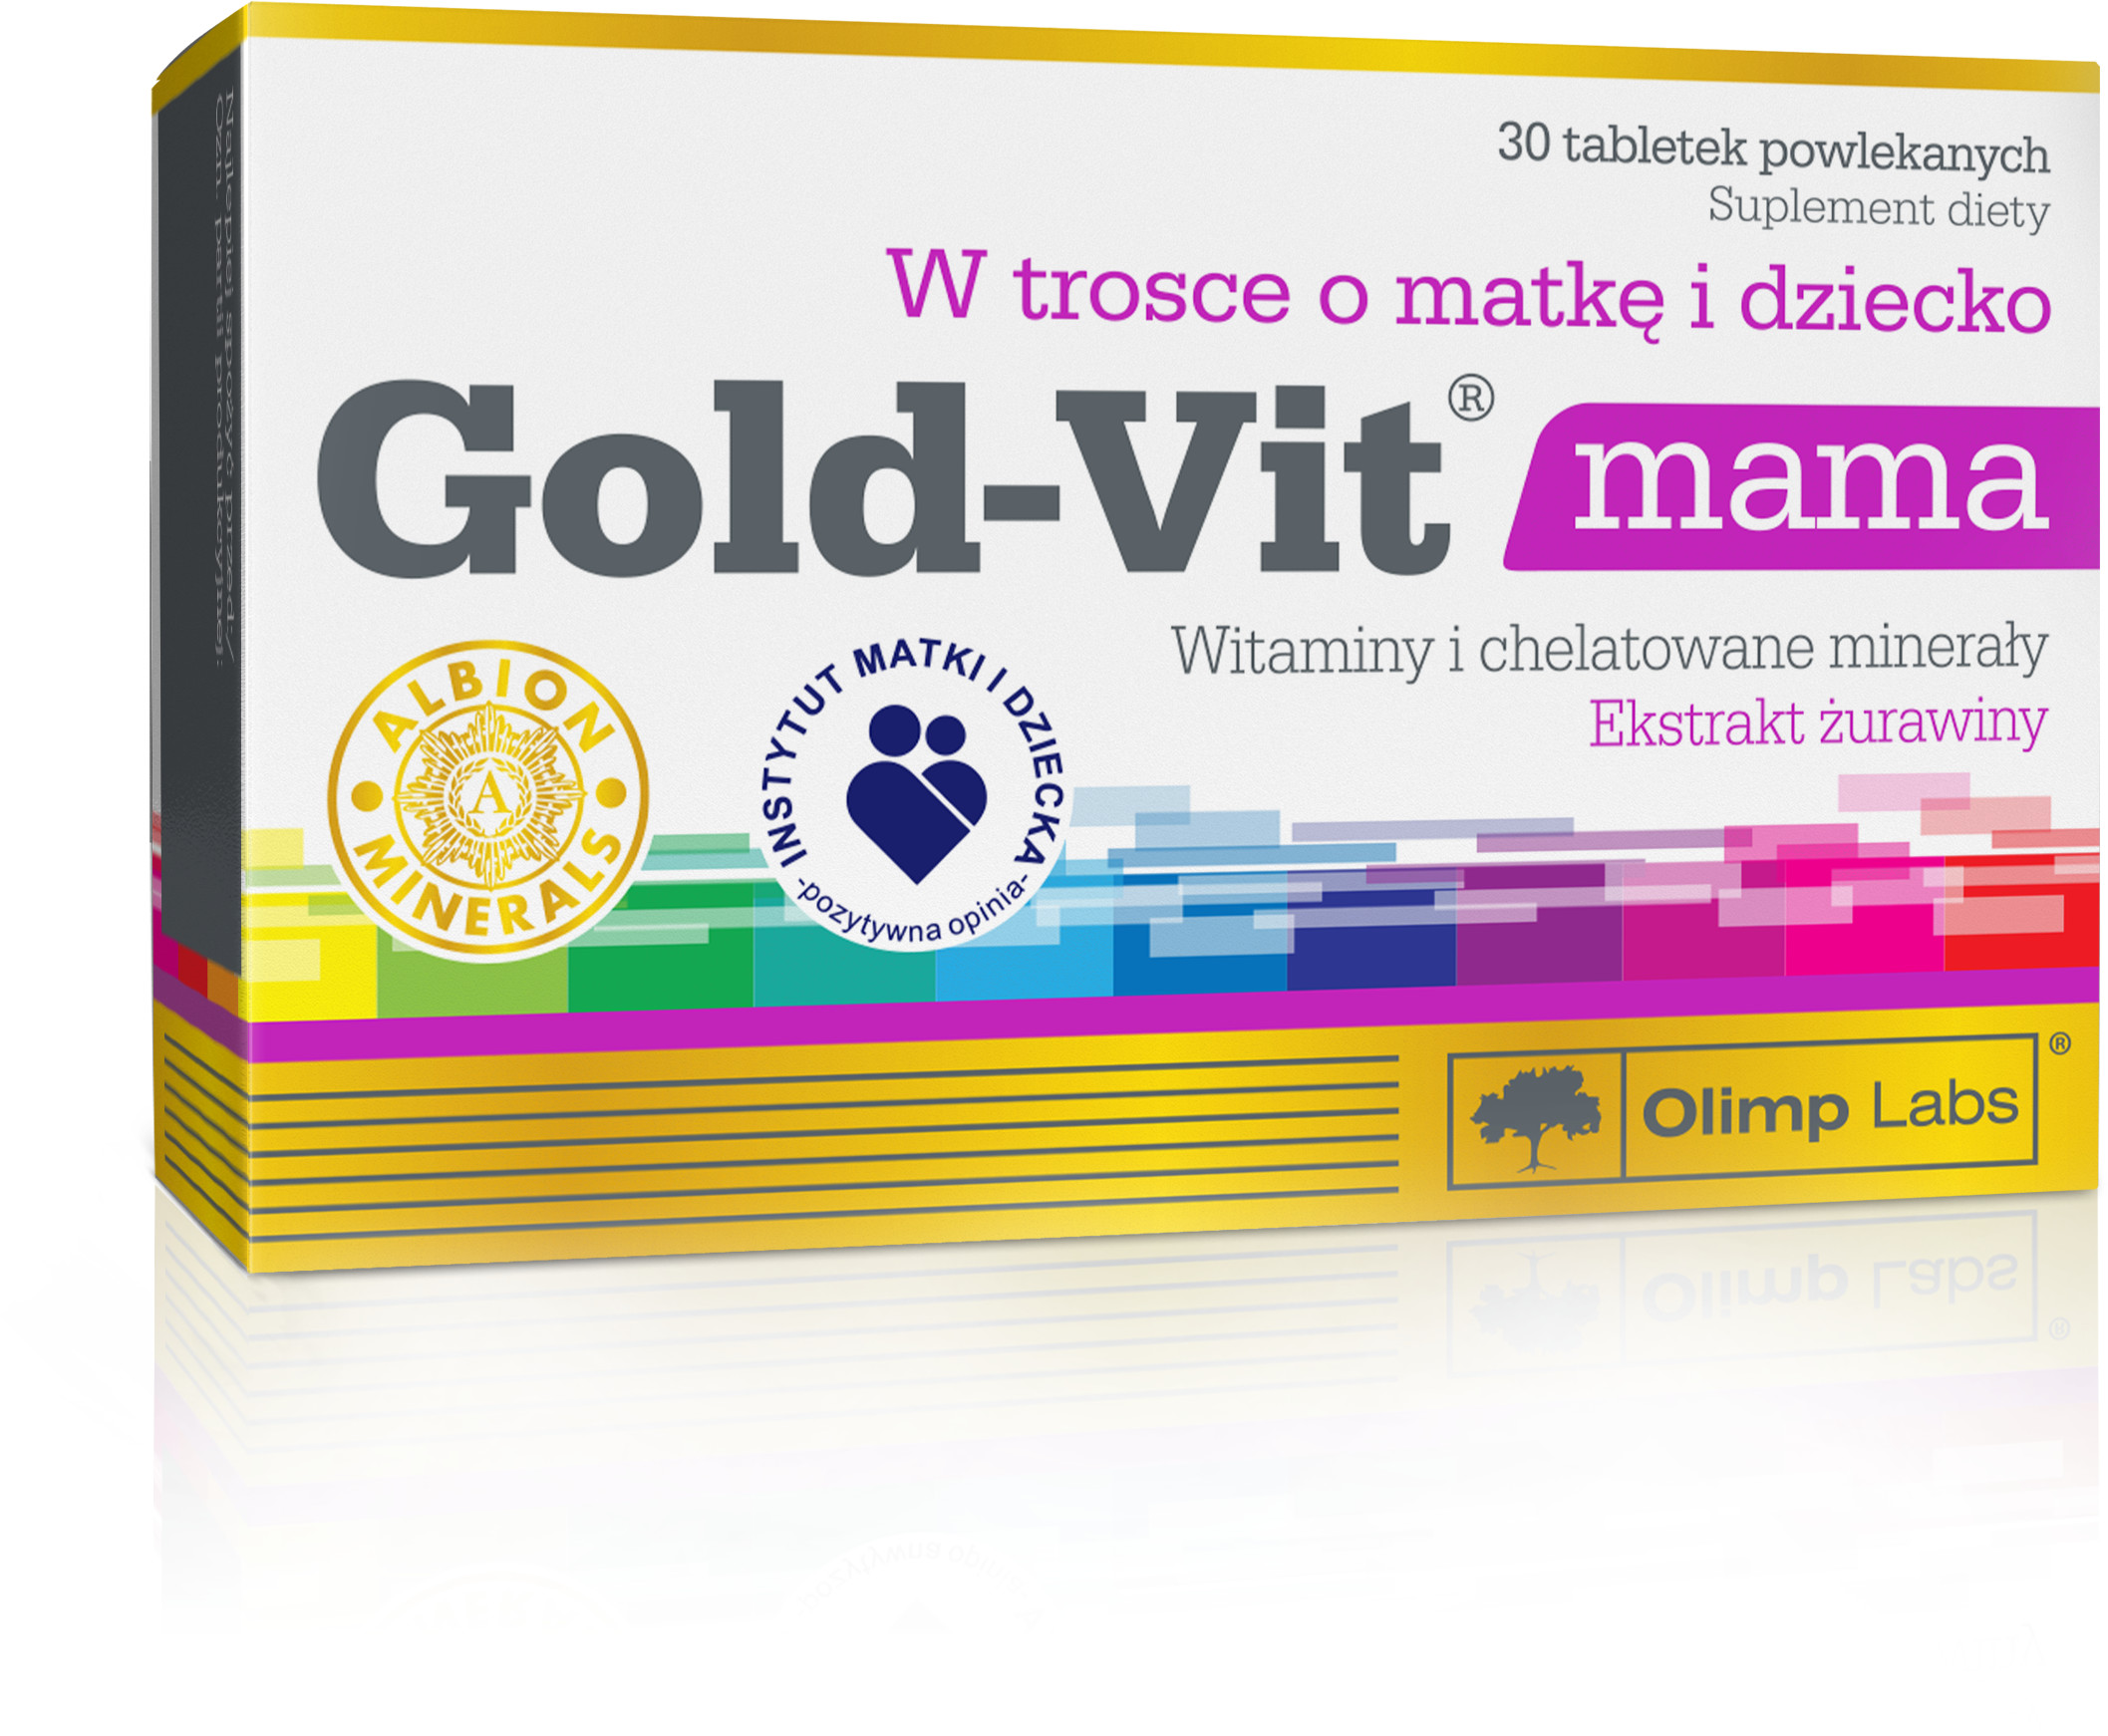 Olimp LABORATORIES Gold-Vit Mama 30 tabletek